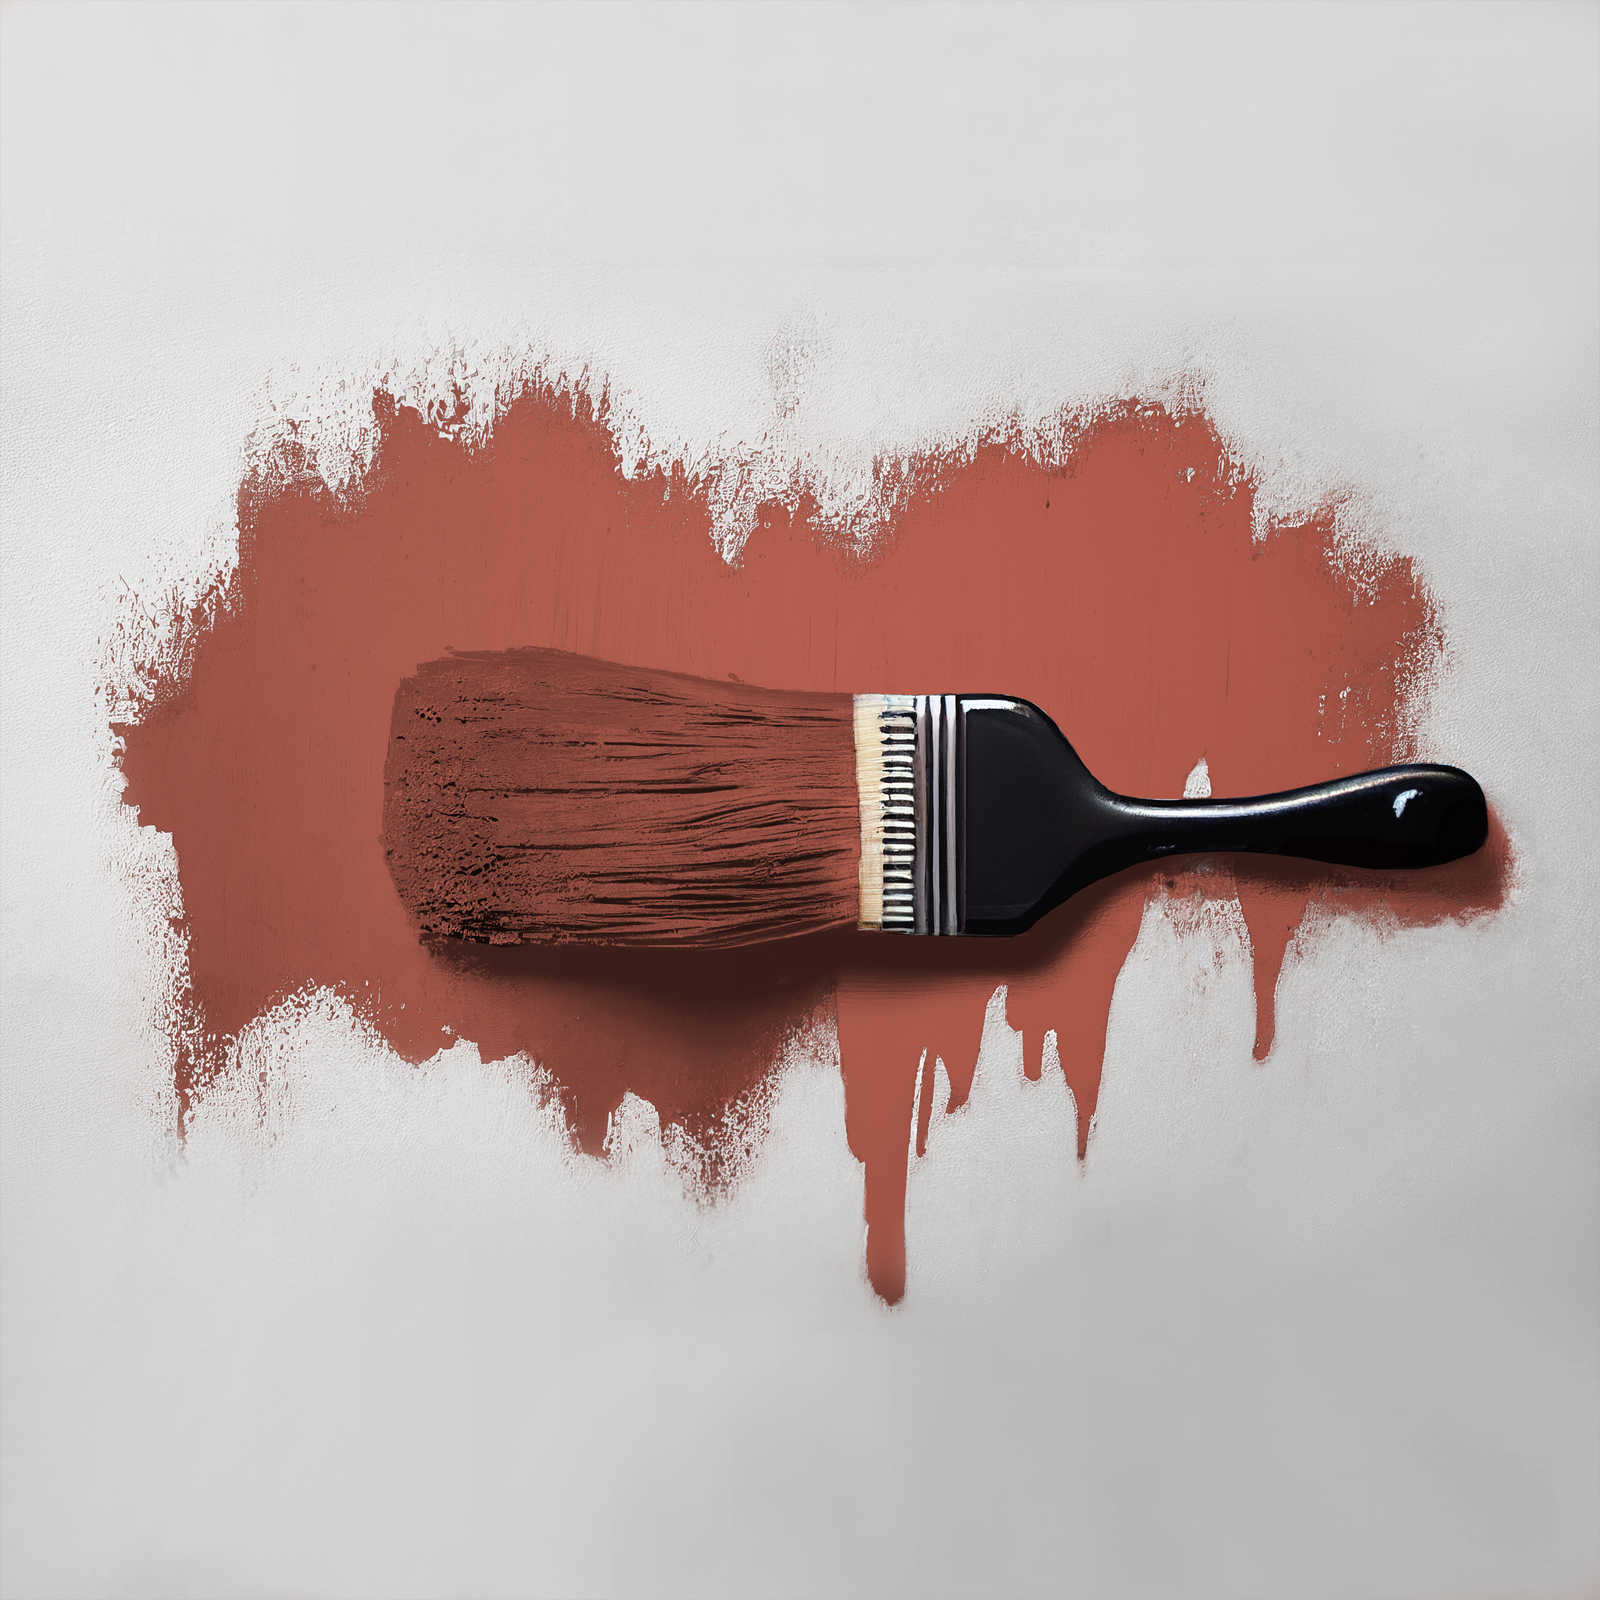             Pittura murale TCK5013 »Simple Safron« in zafferano intensivo – 5,0 litri
        